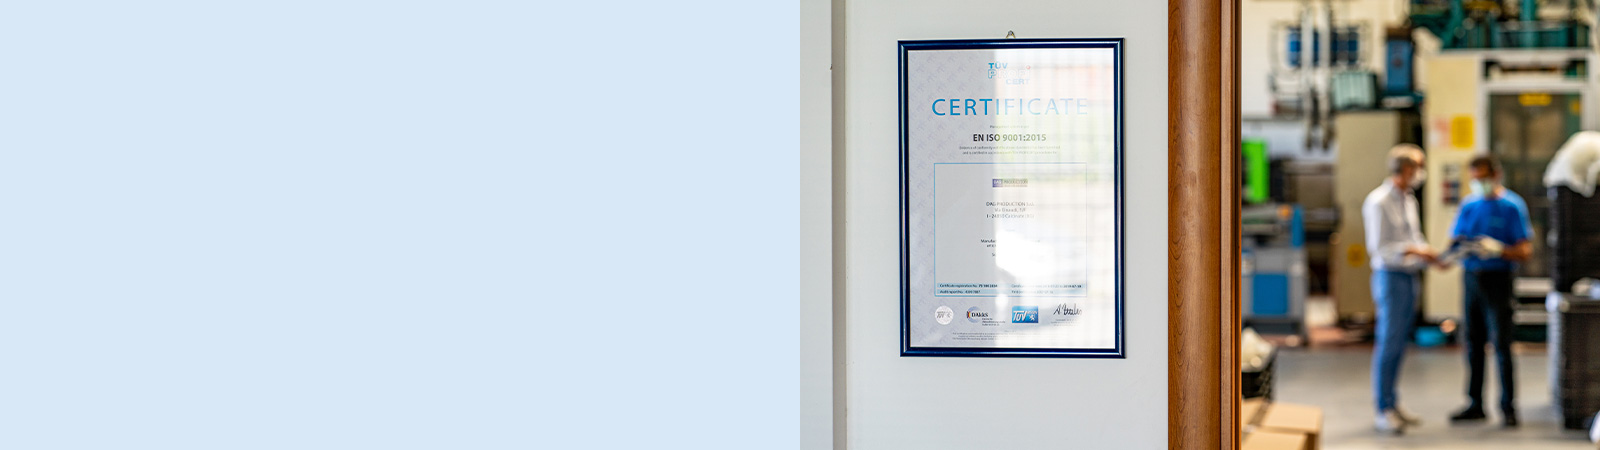 EN ISO 9001:2015 Certification